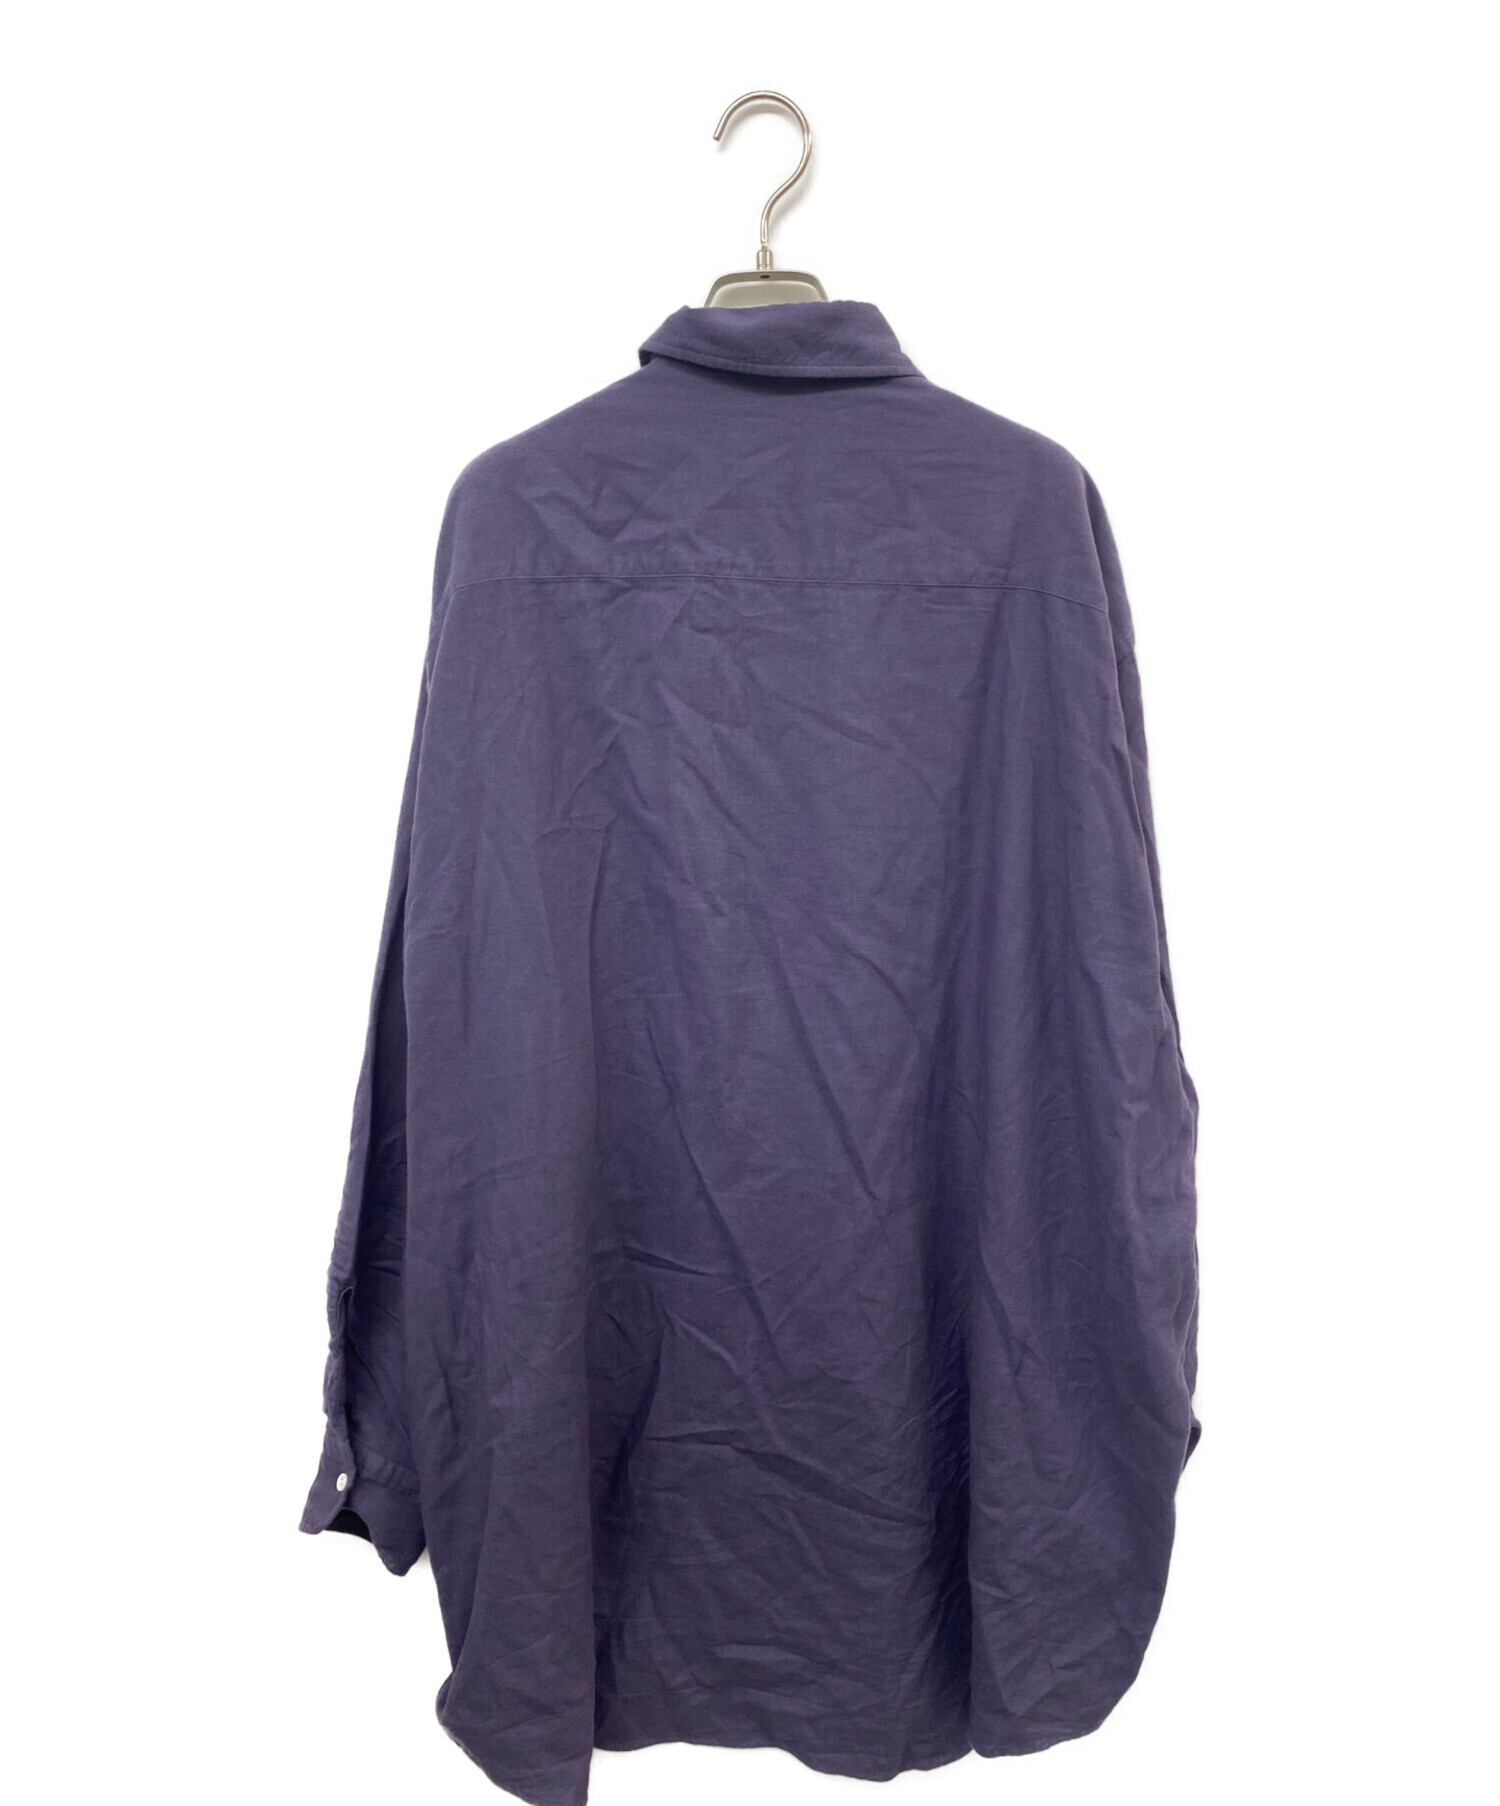 HERILL (ヘリル) オーバーサイズコットンカシミヤワークシャツ パープル サイズ:2